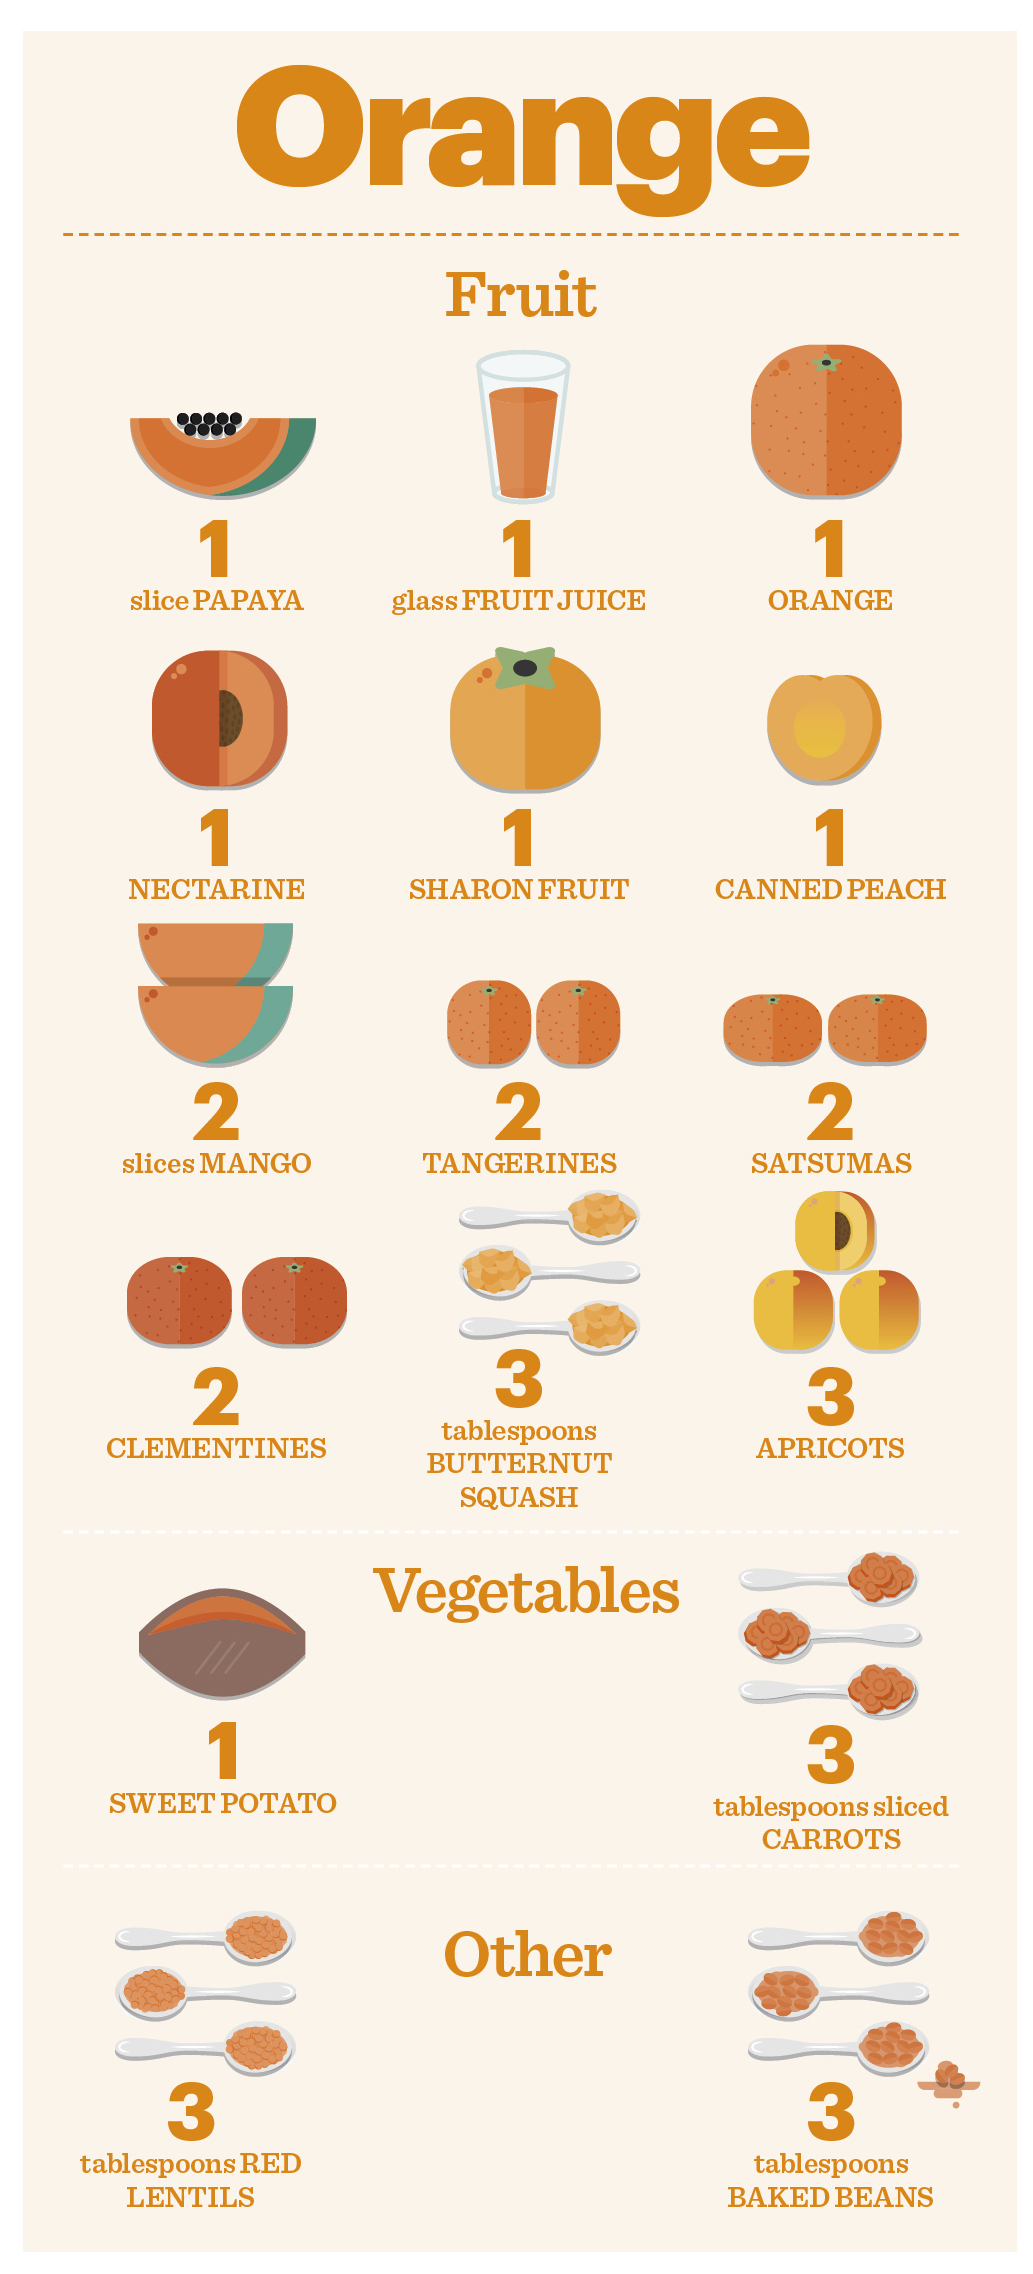 orange fruit and vegetables